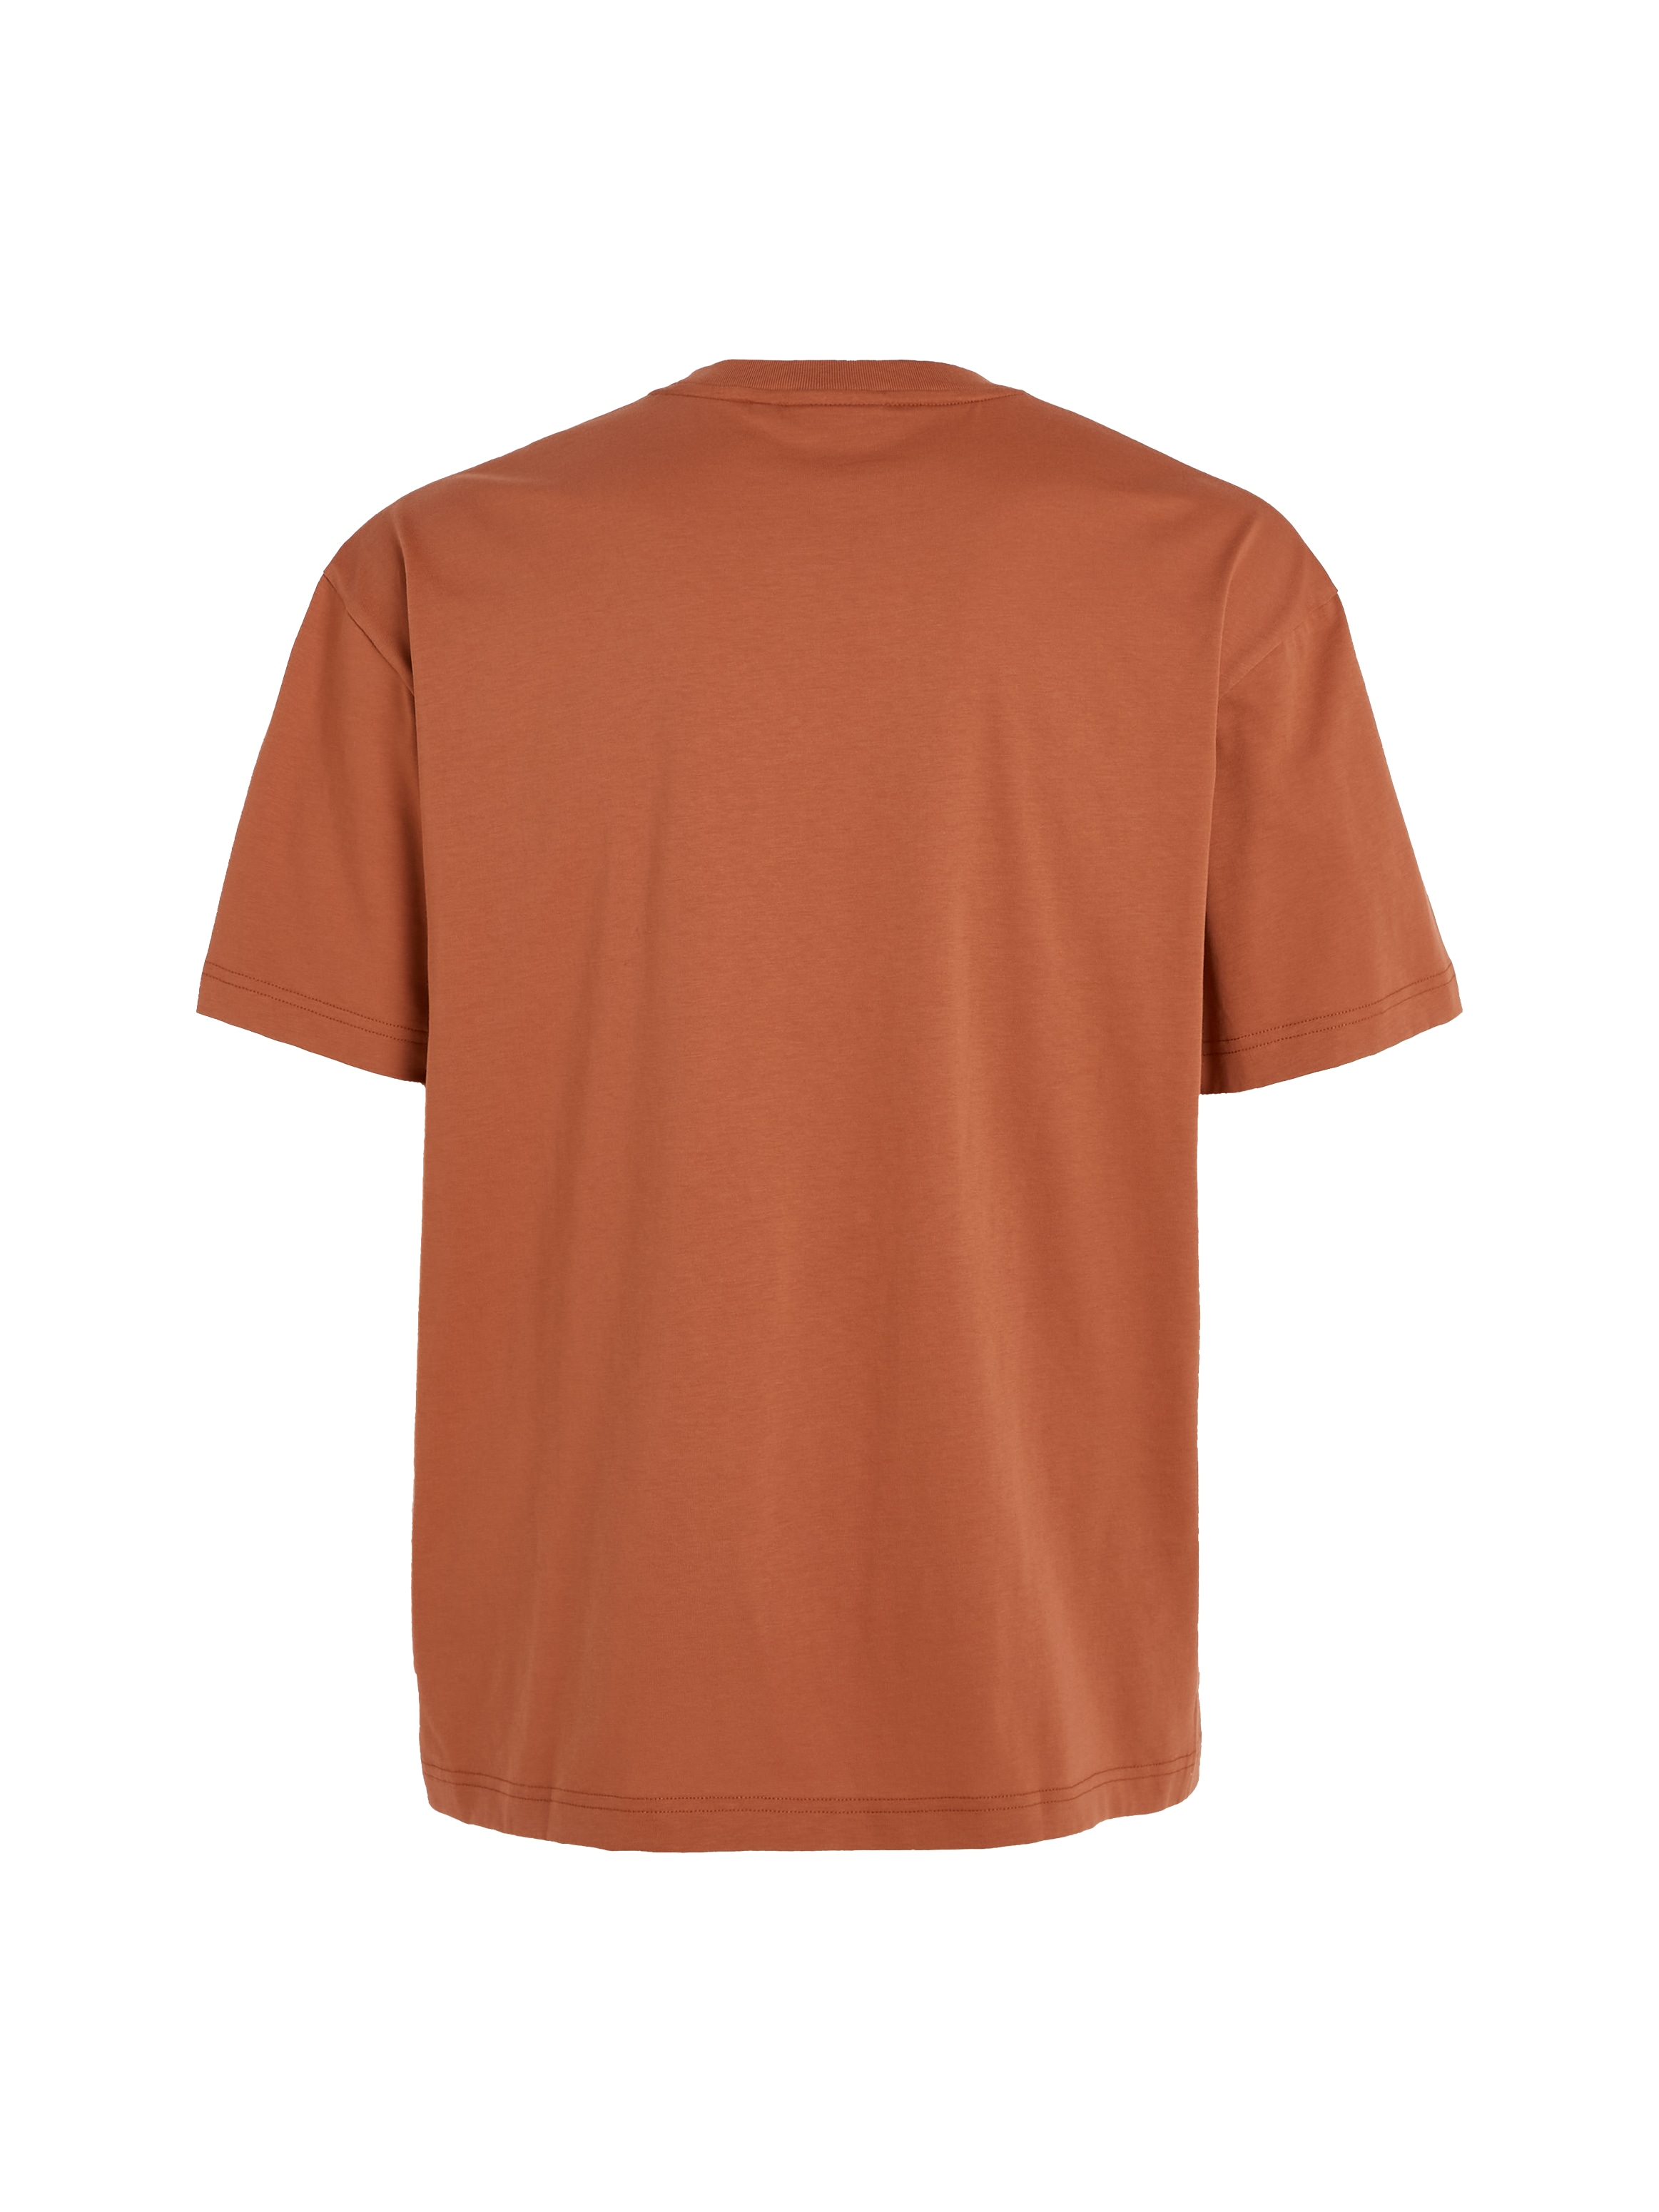 kaufen ➤ - ohne versandkostenfrei Mindestbestellwert Shirts